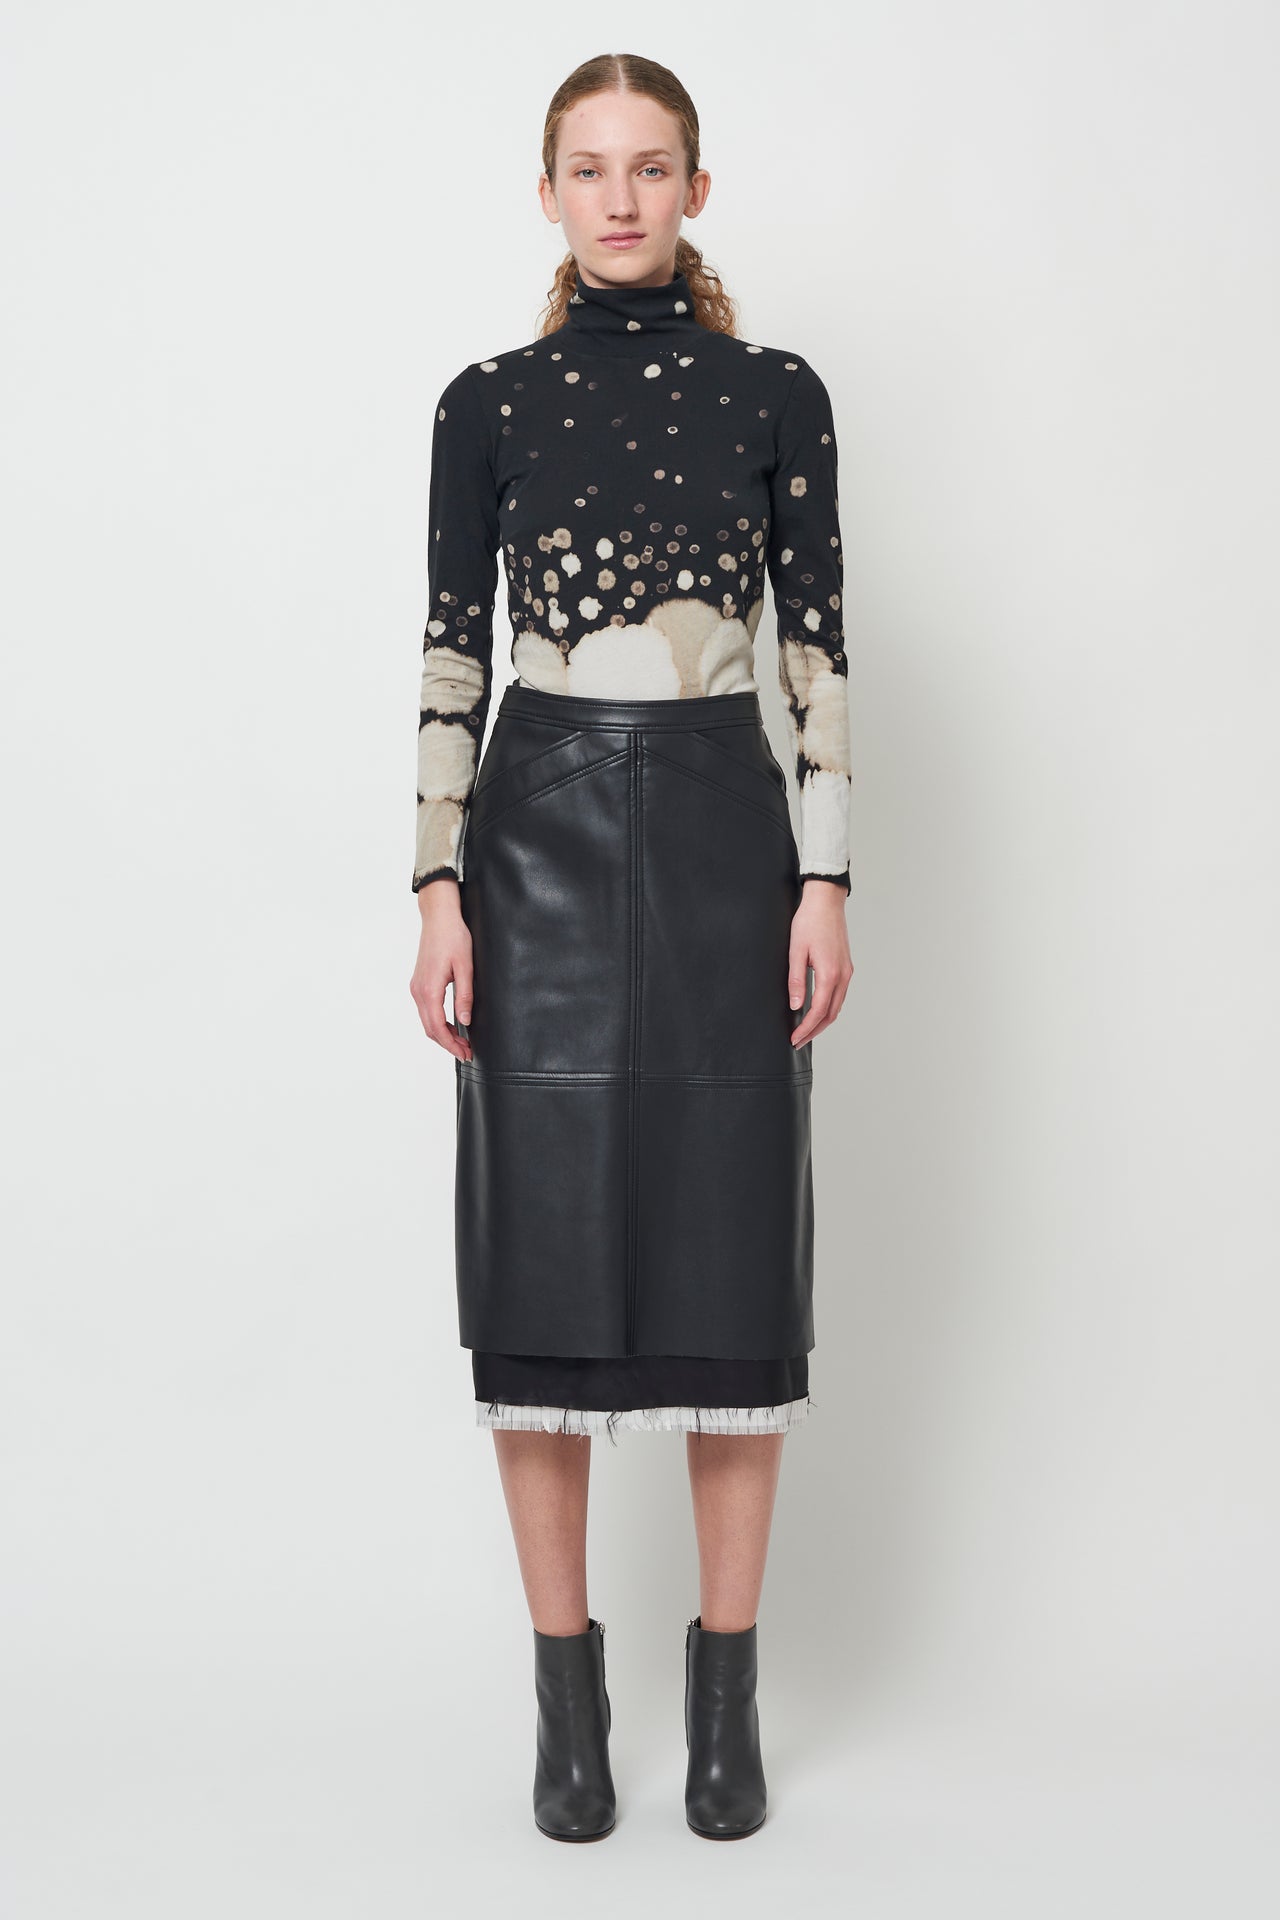 Faux Leather Black Aurora Skirt – Raquel Allegra